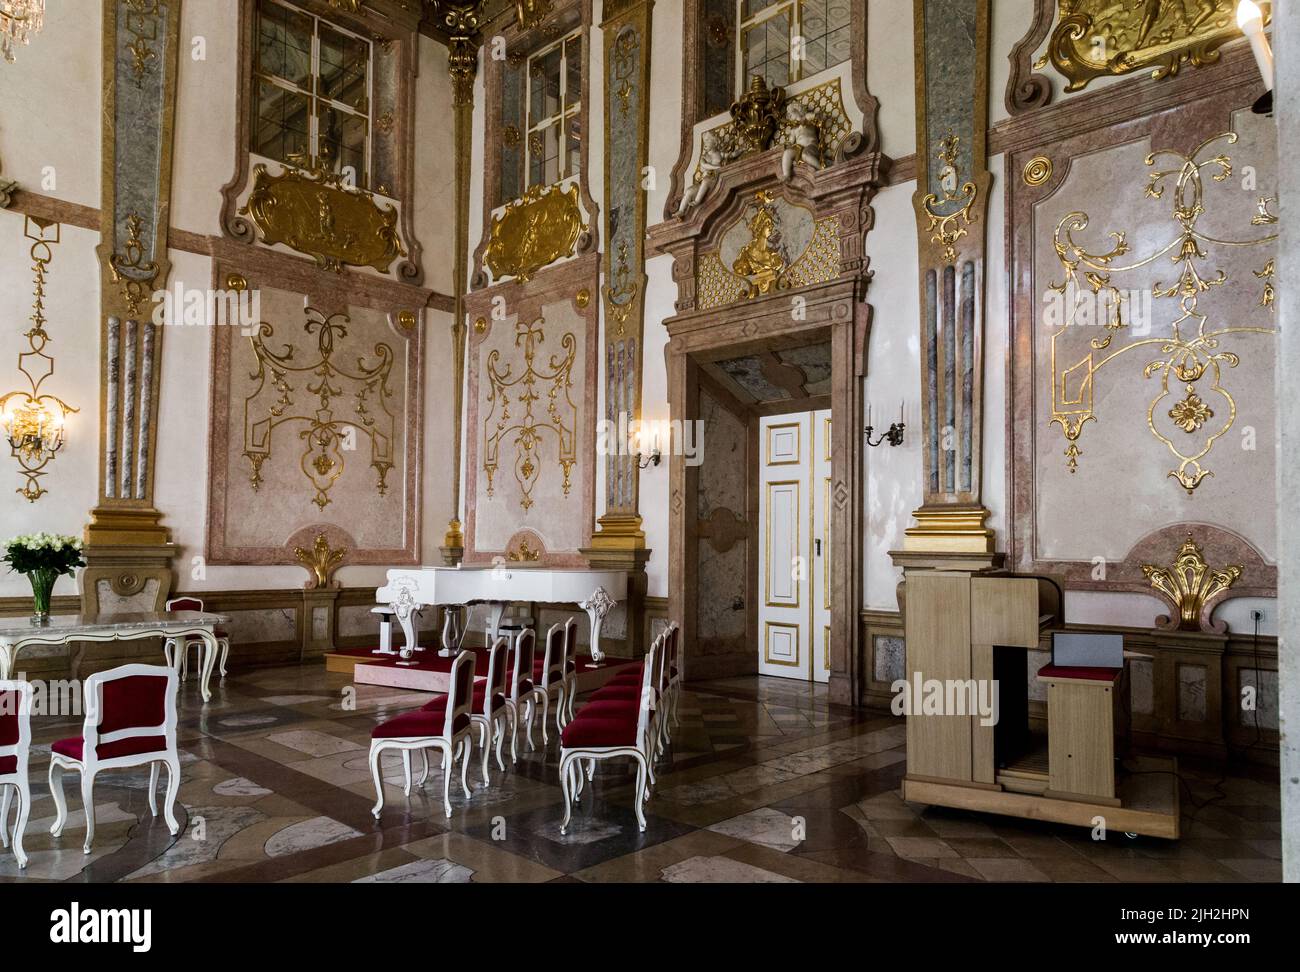 SALISBURGO, AUSTRIA - 17 MAGGIO 2019: Questo è un frammento della Sala del marmo all'interno del Palazzo Mirabell. Foto Stock